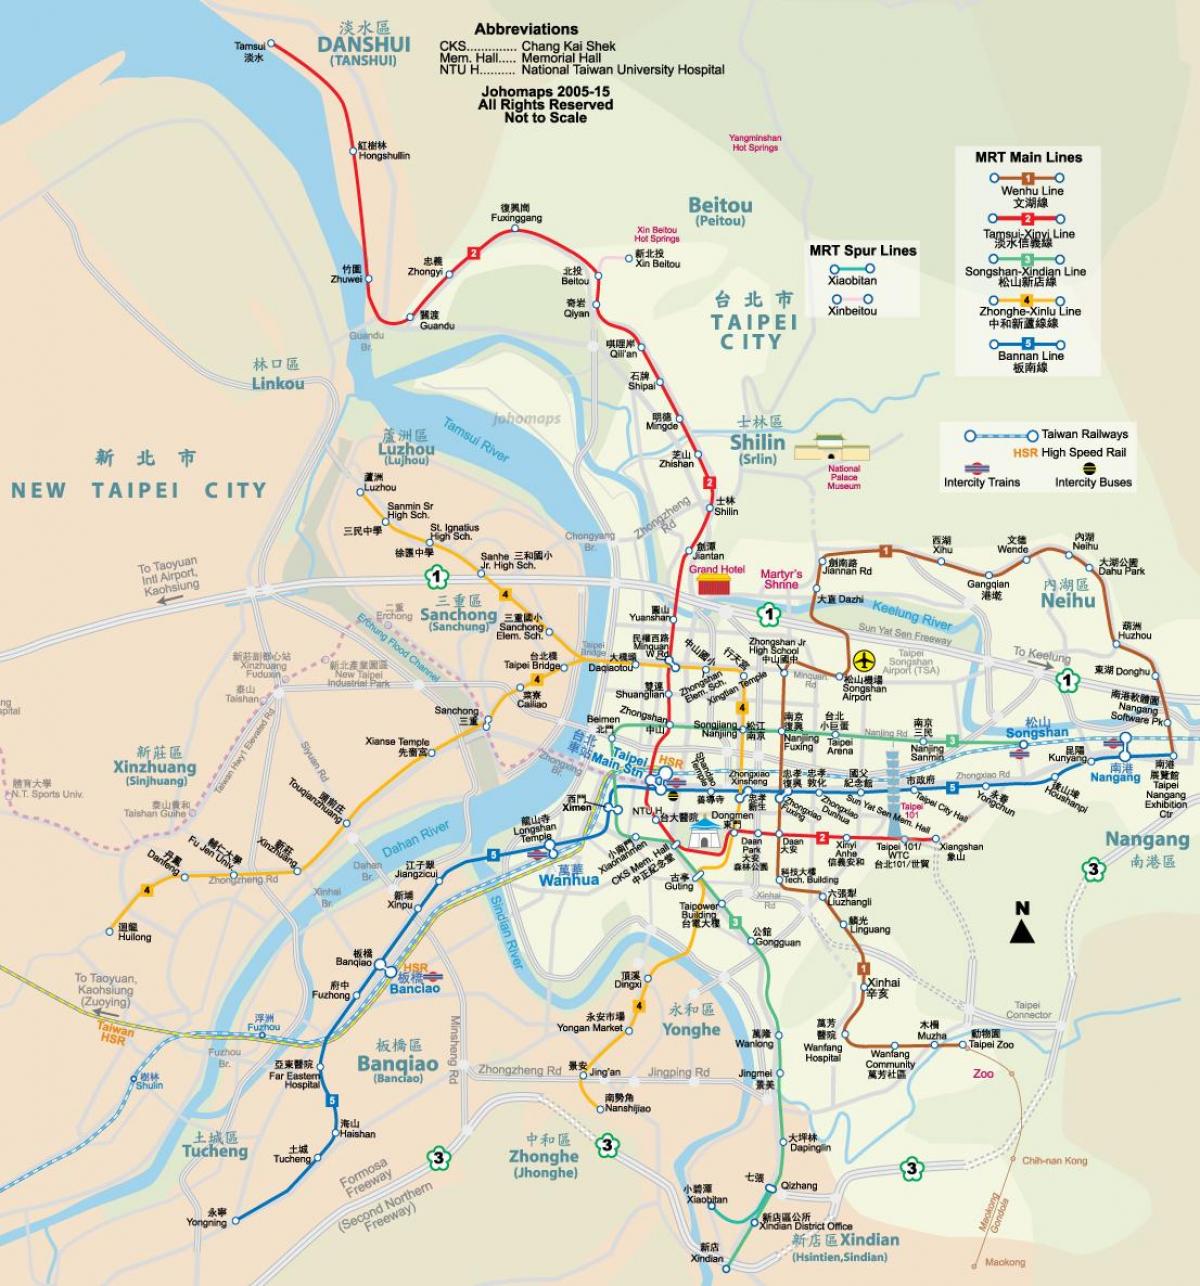 map of danshui